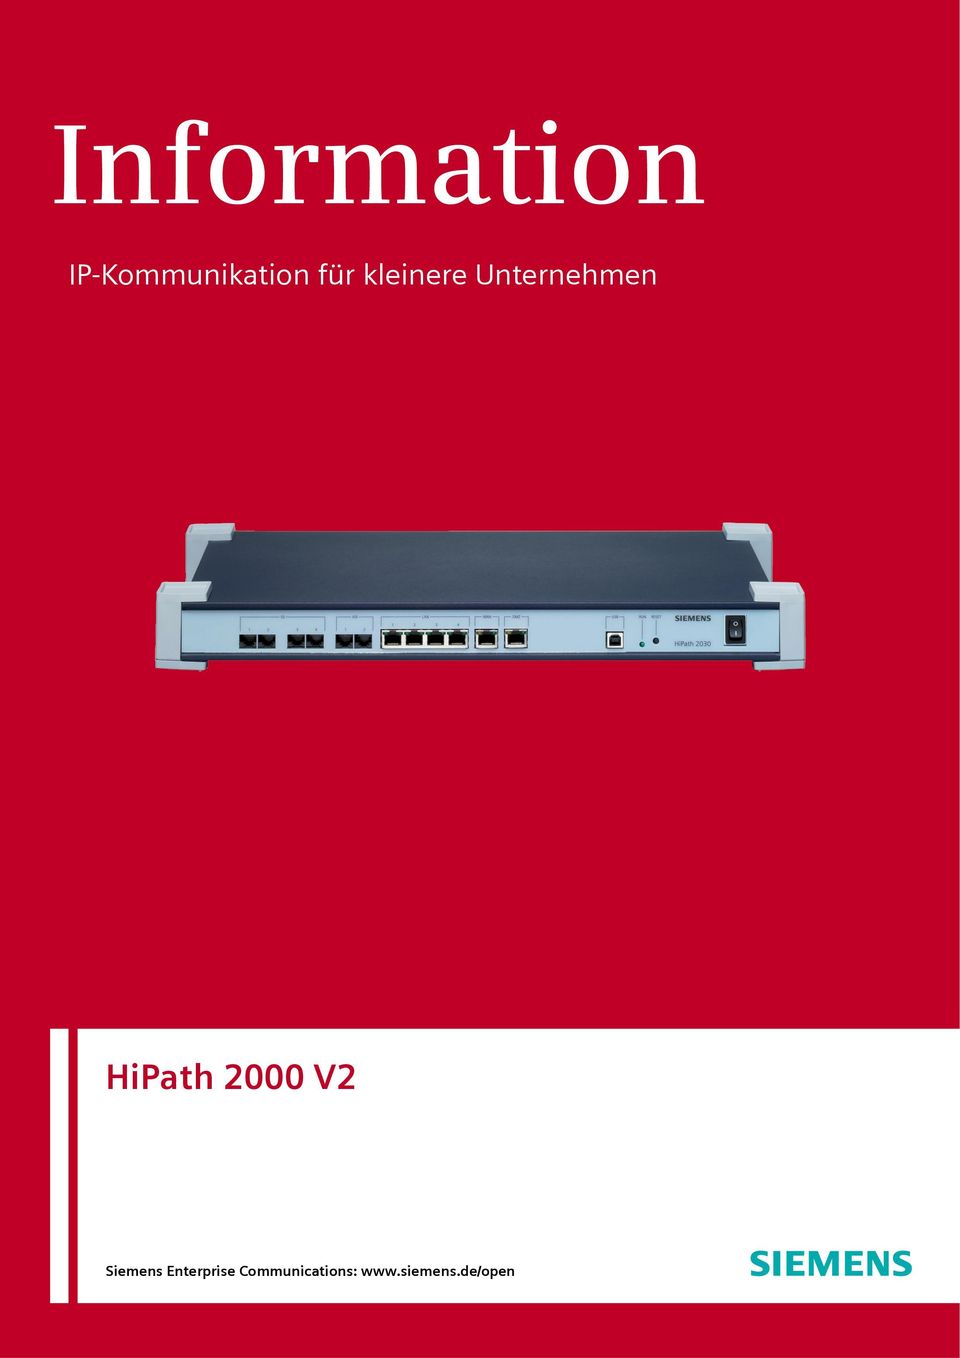 HiPath 2000 V2 Siemens